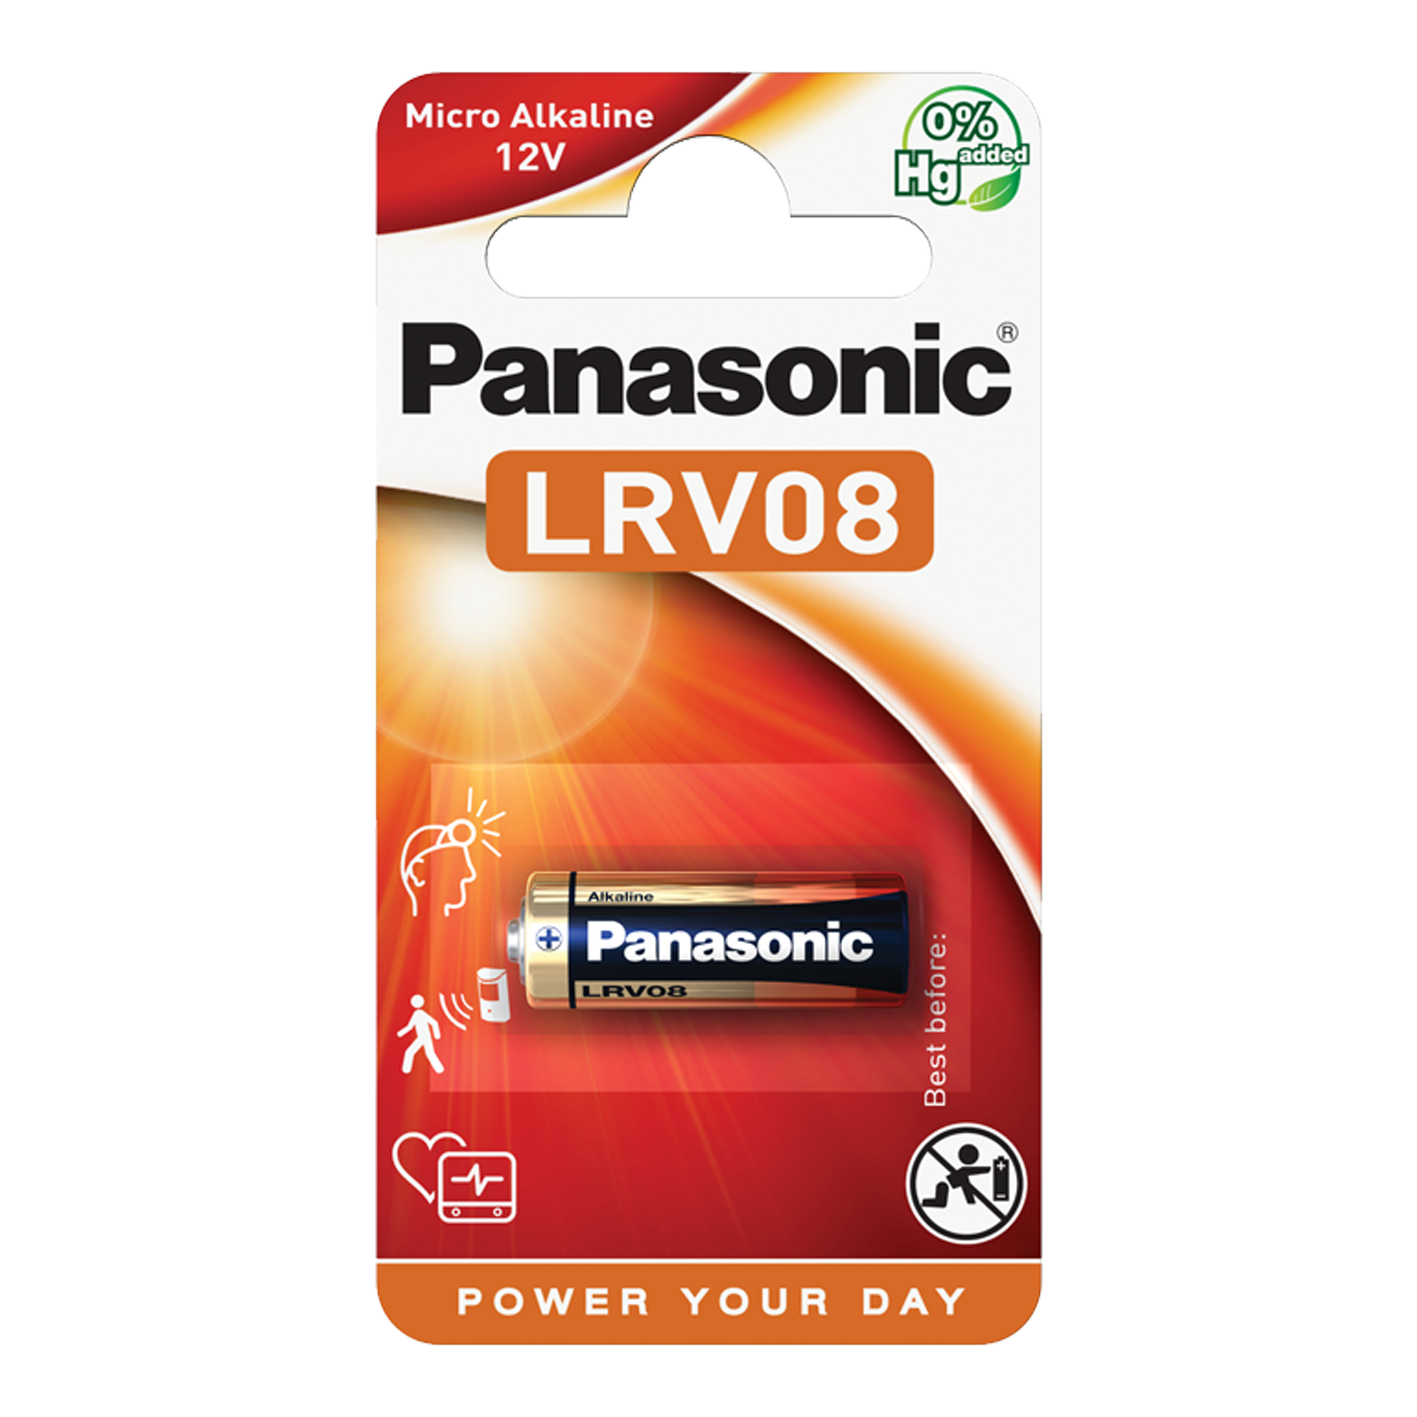 Panasonic LRV08 12V Cell Power, Pack of 1